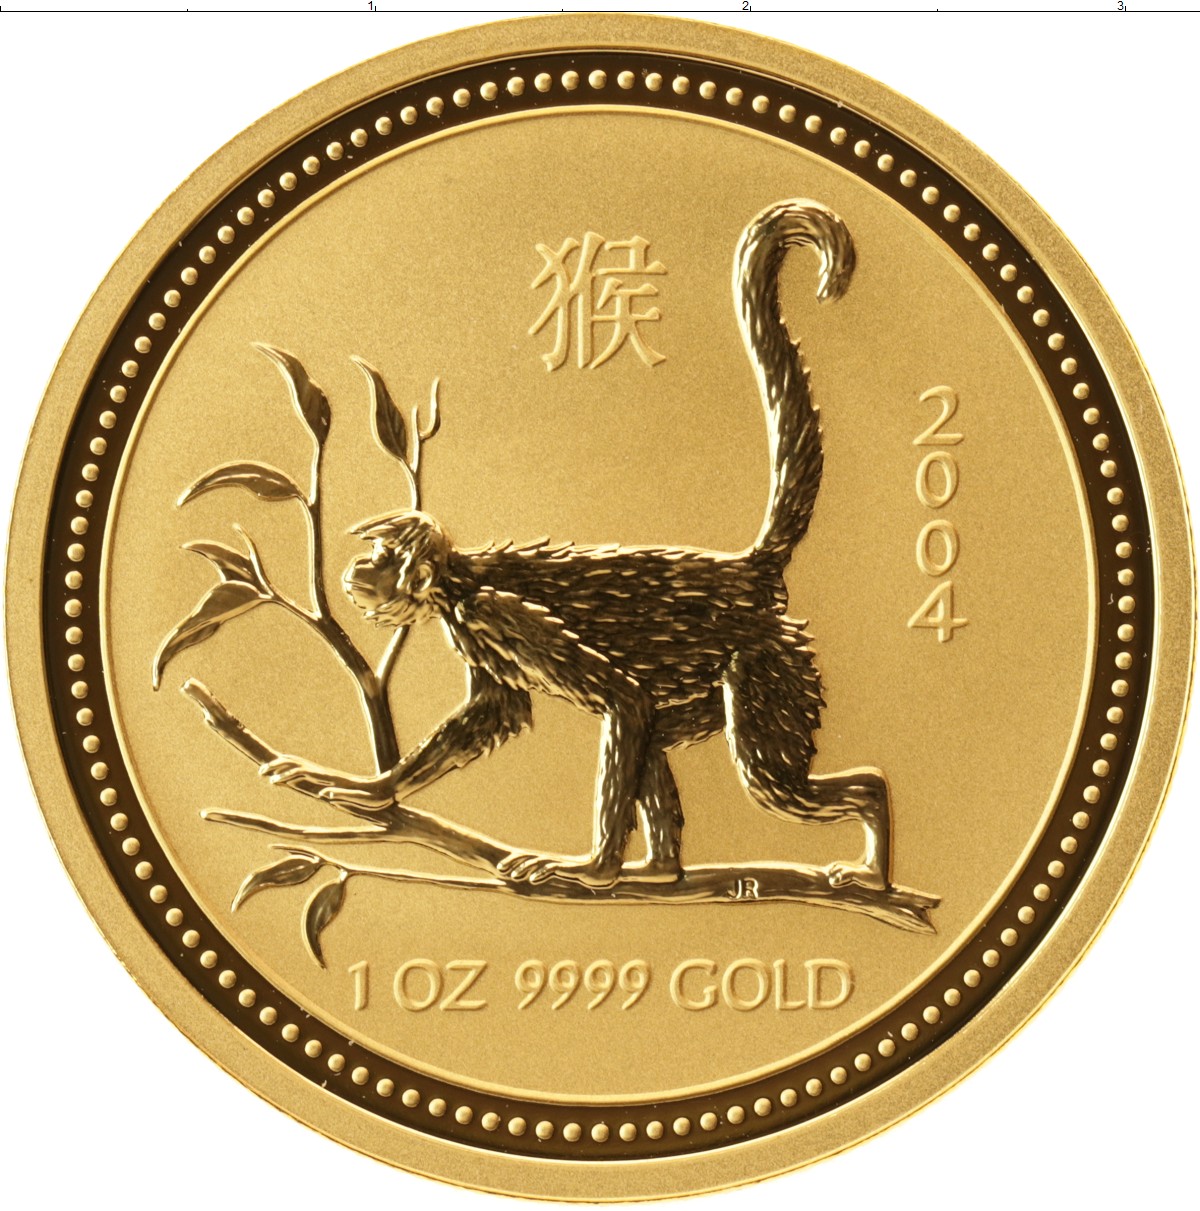 Золотые монеты 50 лет. Золотая монета с обезьяной. Золотая монета Австралии с обезьяной. Австралийский доллар в год обезьяны. Золотые монеты Пертского монетного двора.